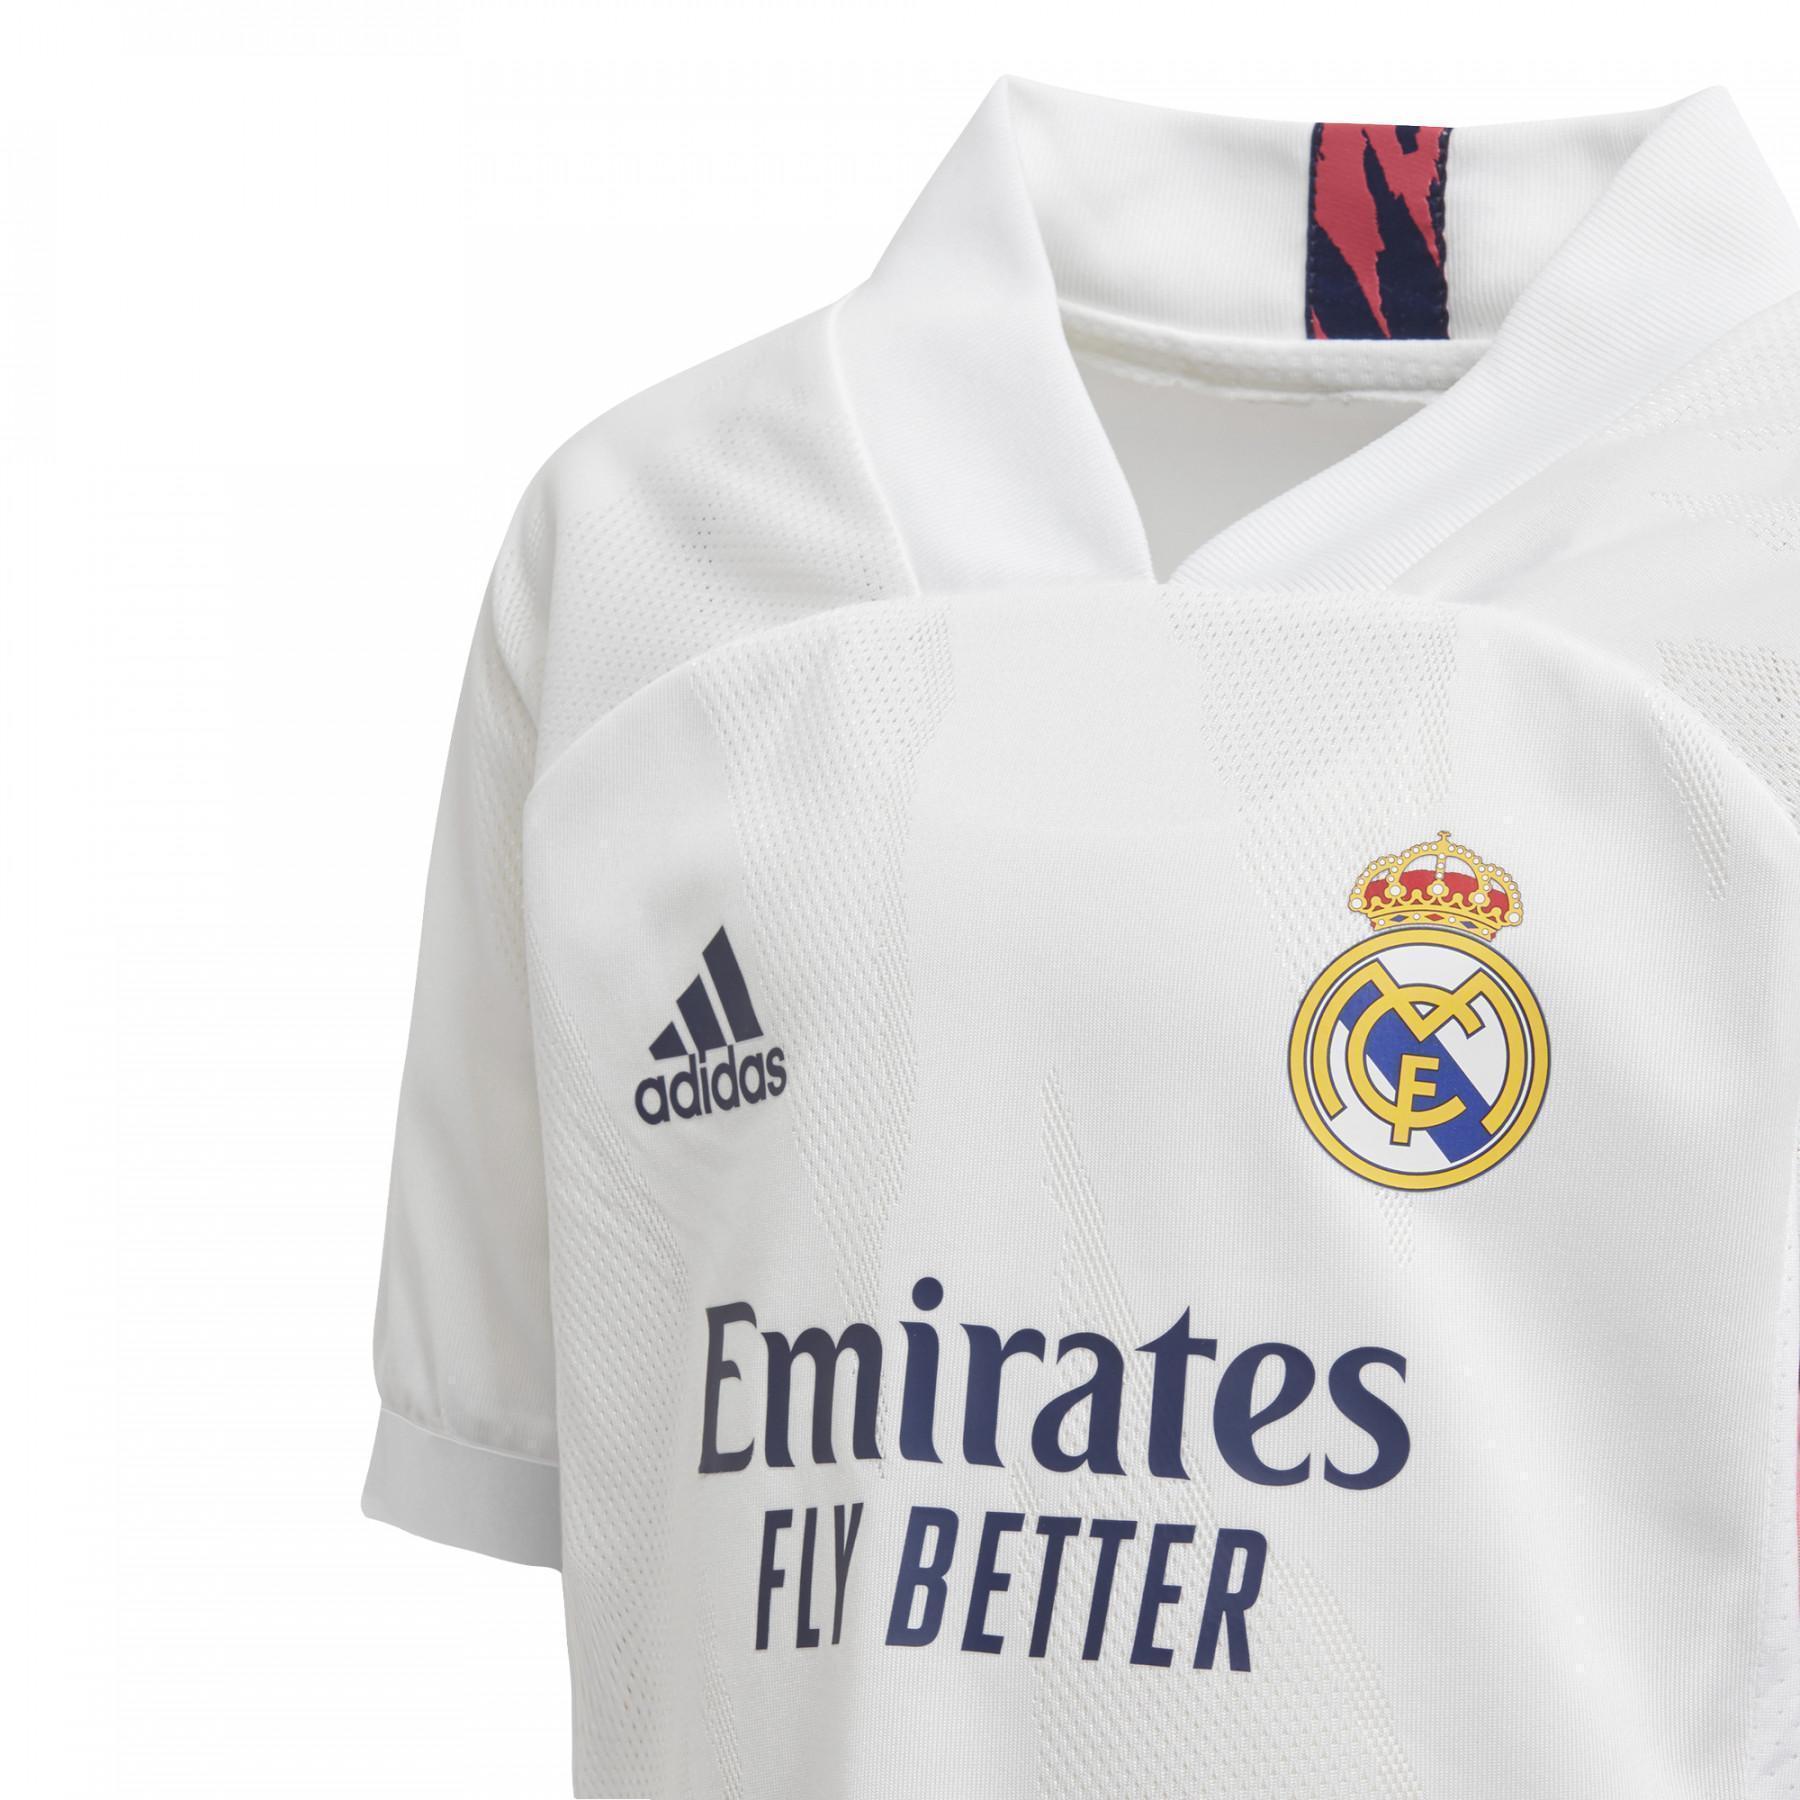 Conjunto primera equipación Real Madrid 2020/21